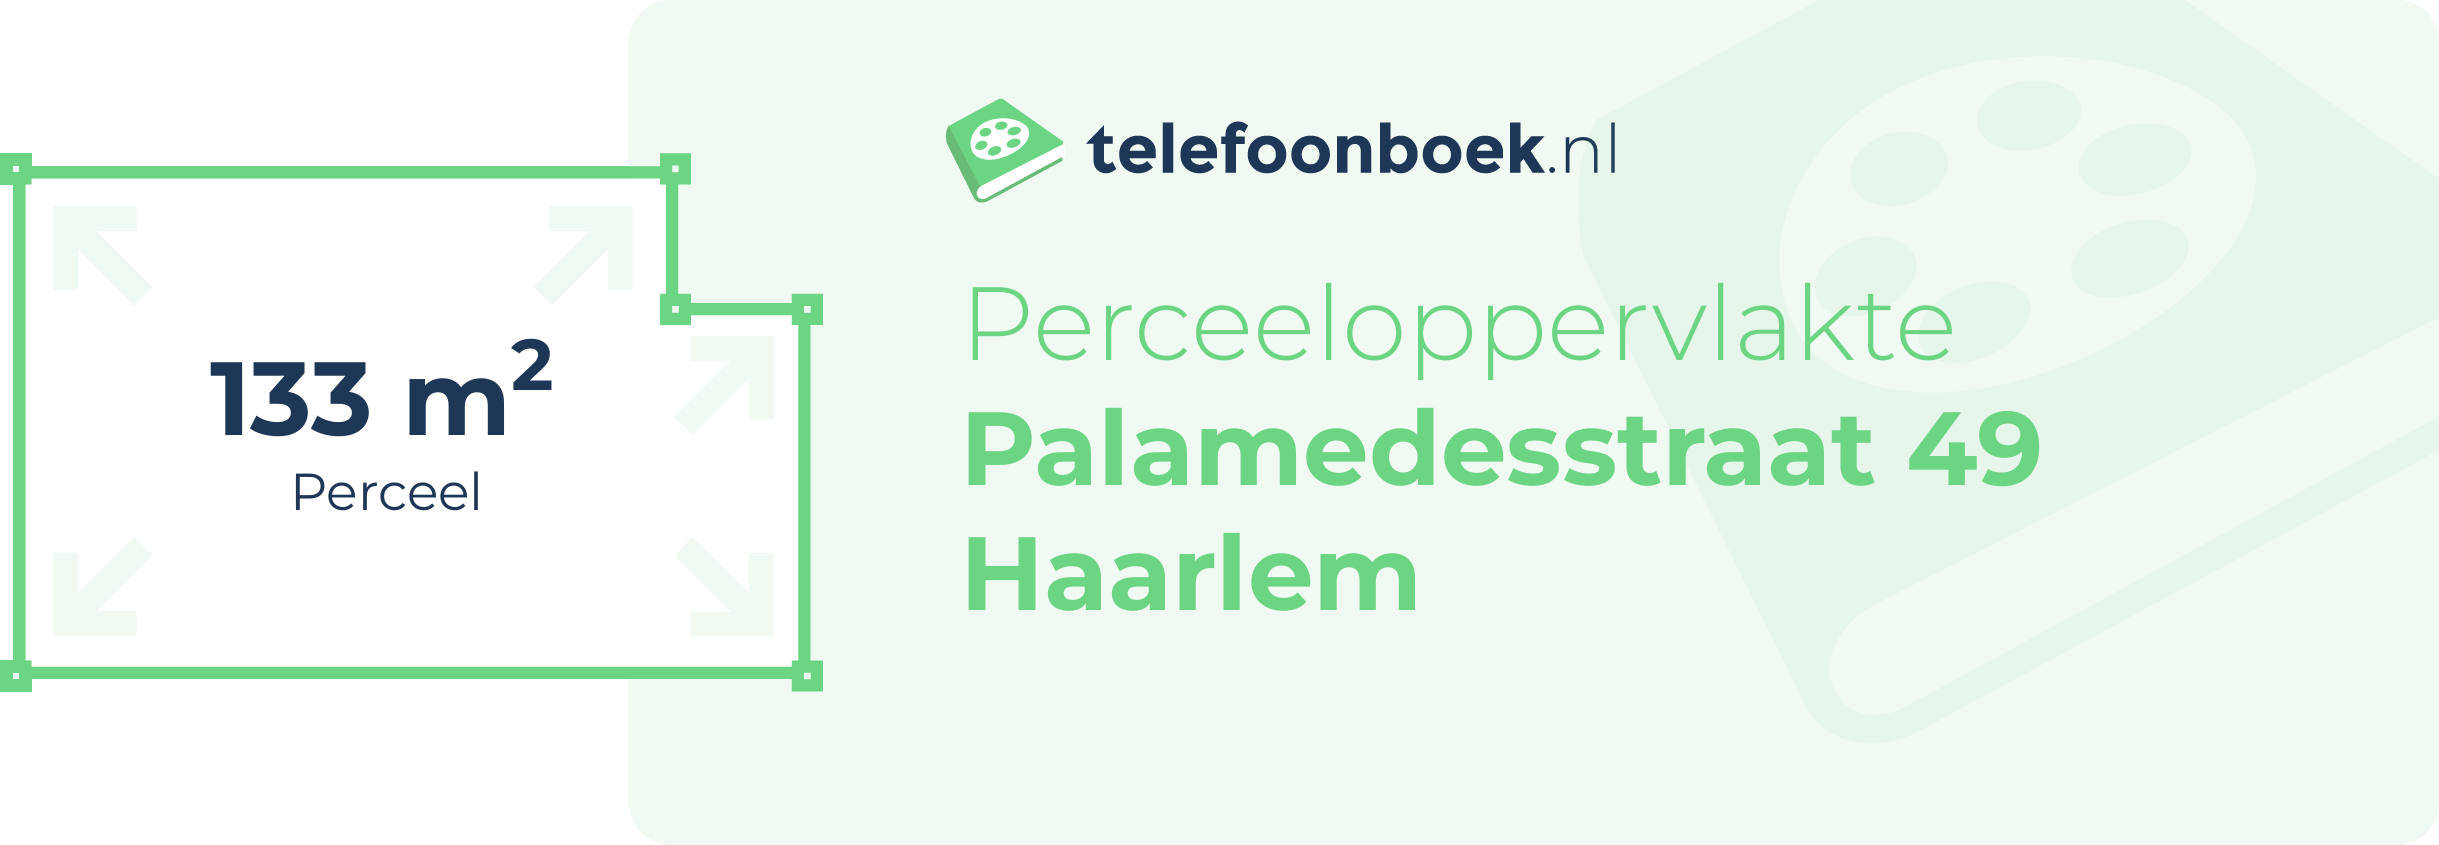 Perceeloppervlakte Palamedesstraat 49 Haarlem